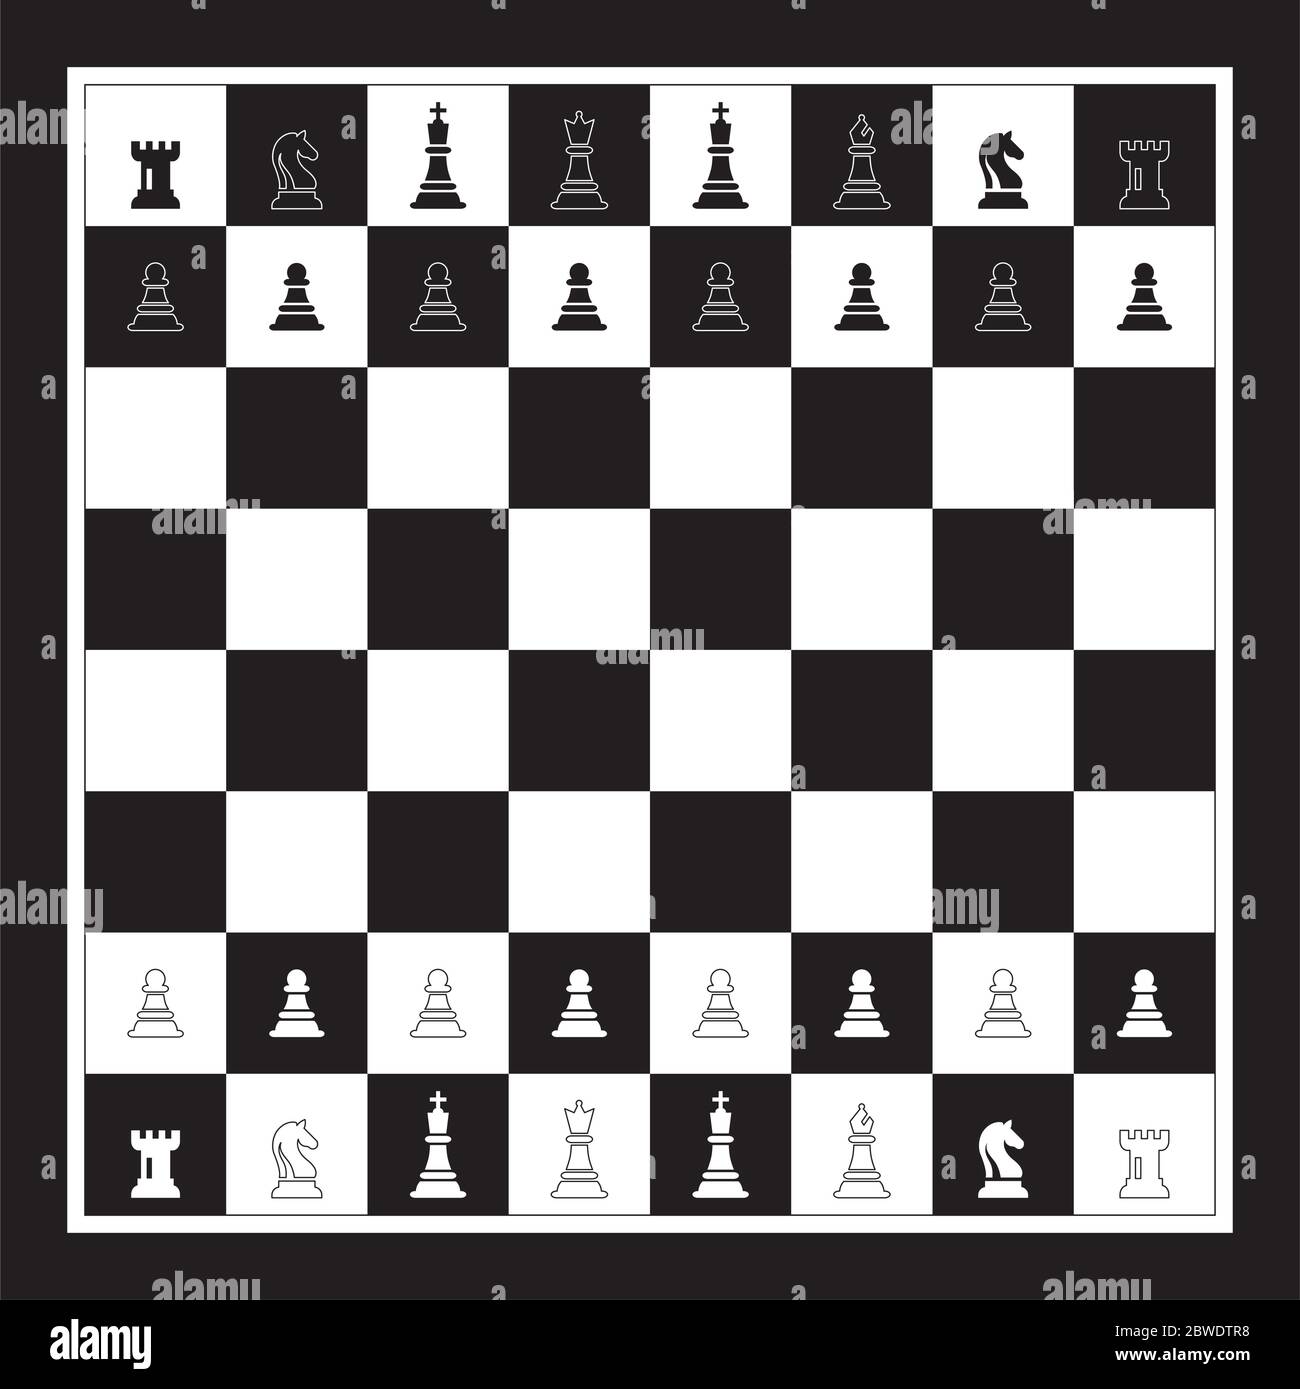 Descargar fondos de pantalla el ajedrez, los juegos, la figura del caballo,  tablero de ajedrez